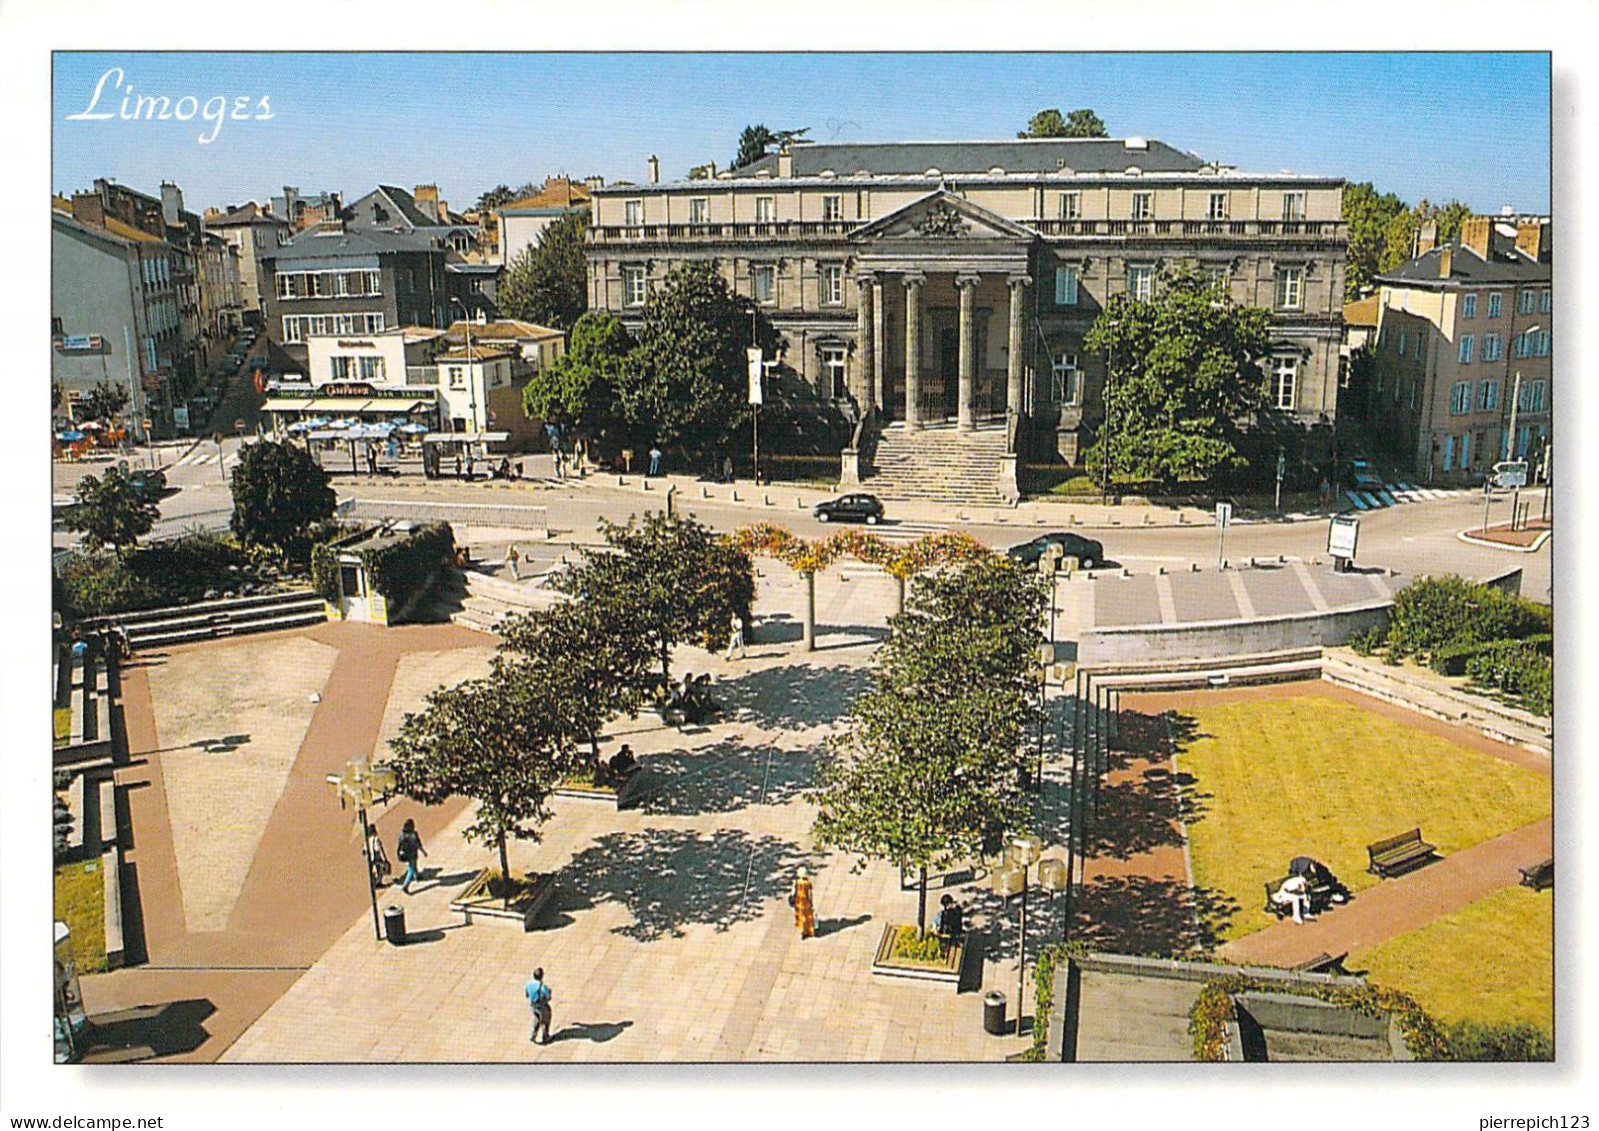 87 - Limoges - Place D'Aine : Le Palais D'Orsay - Vue Aérienne - Limoges